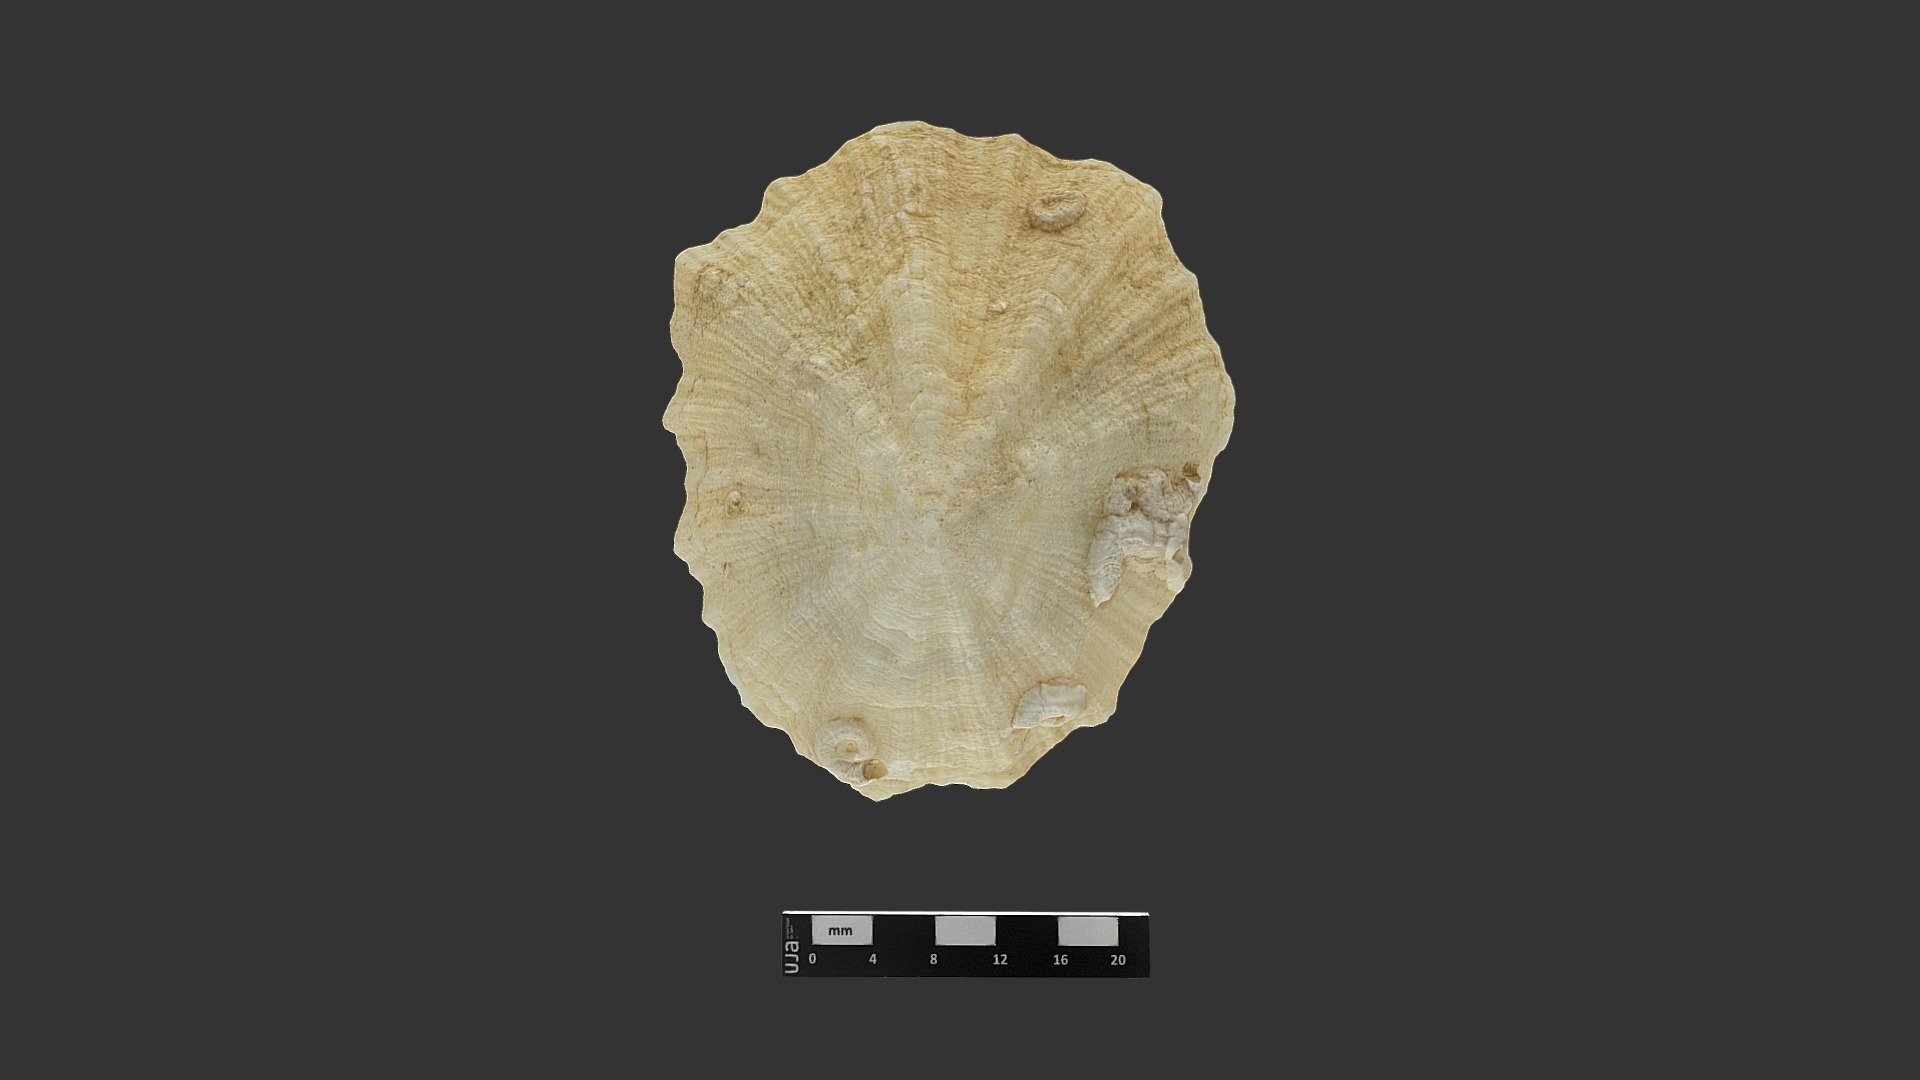 Patella (lapa). Mioceno, Villanueva de la Reina.